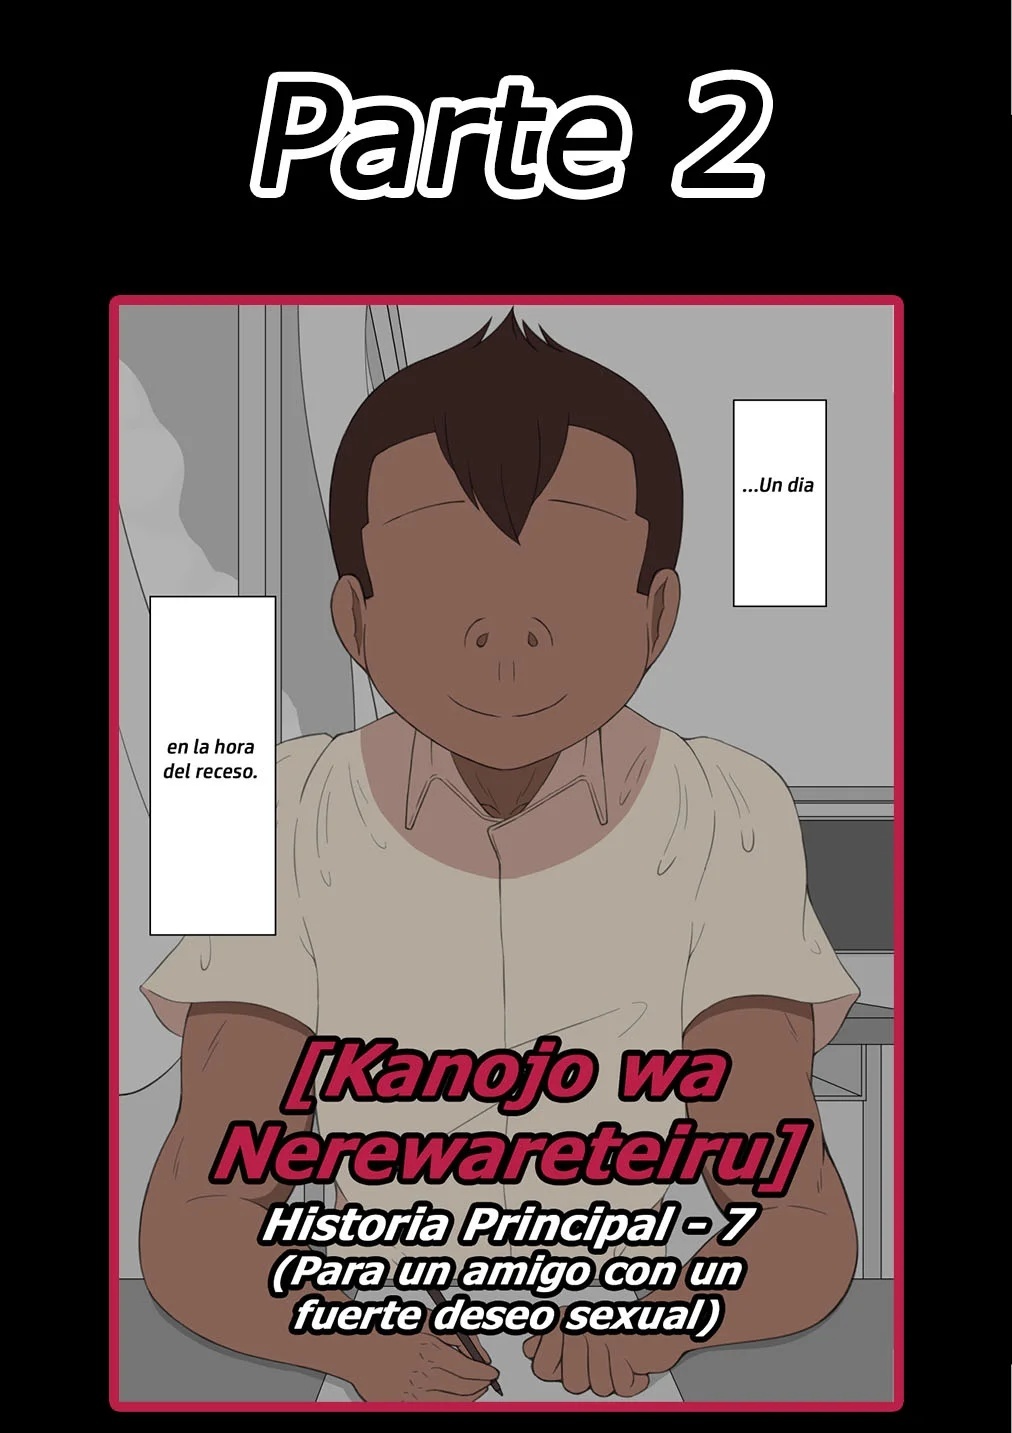 Kanojo wa Nerewareteiru - Historia Principal 7 - Para un amigo con un fuerte deseo sexual - PARTE 2 - 0